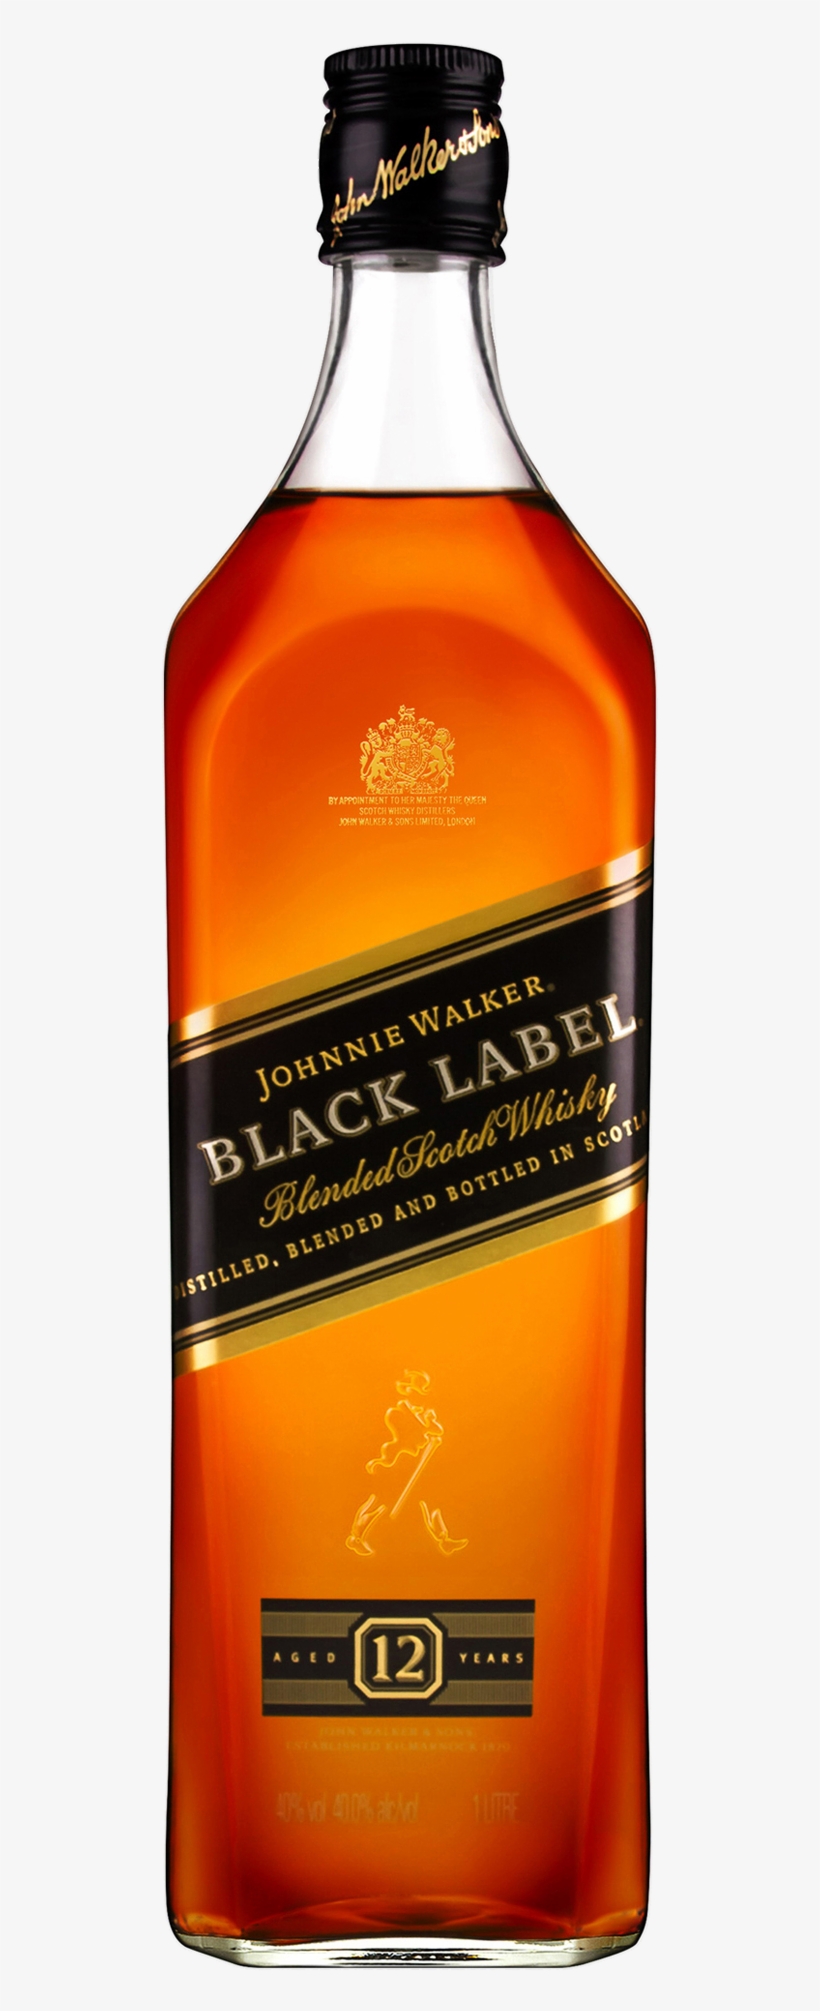 Johnnie Walker Black Label Scotch Whisky 1l Bottle - John Walker & Sons Johnnie Walker Black Label, transparent png #2298063